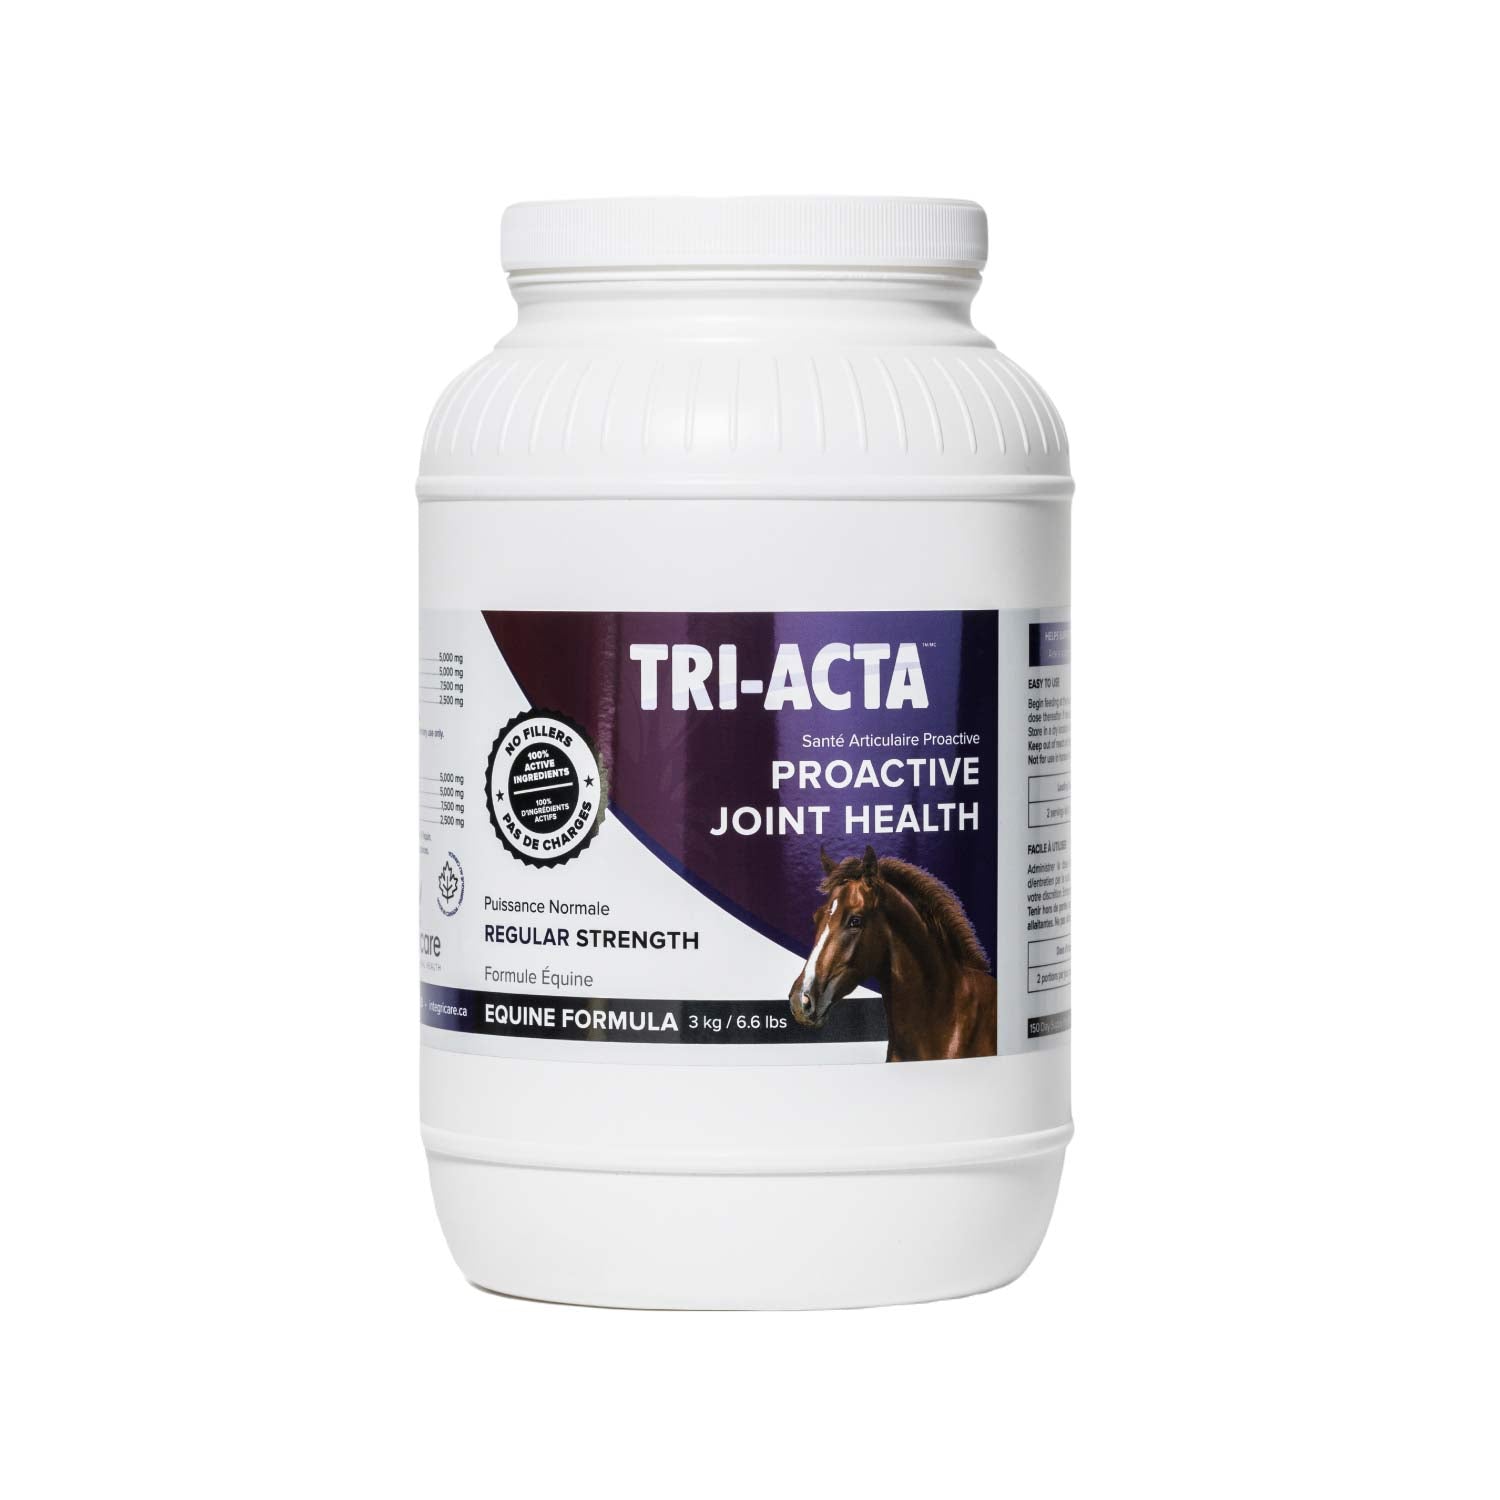 TRI-ACTA for Equine